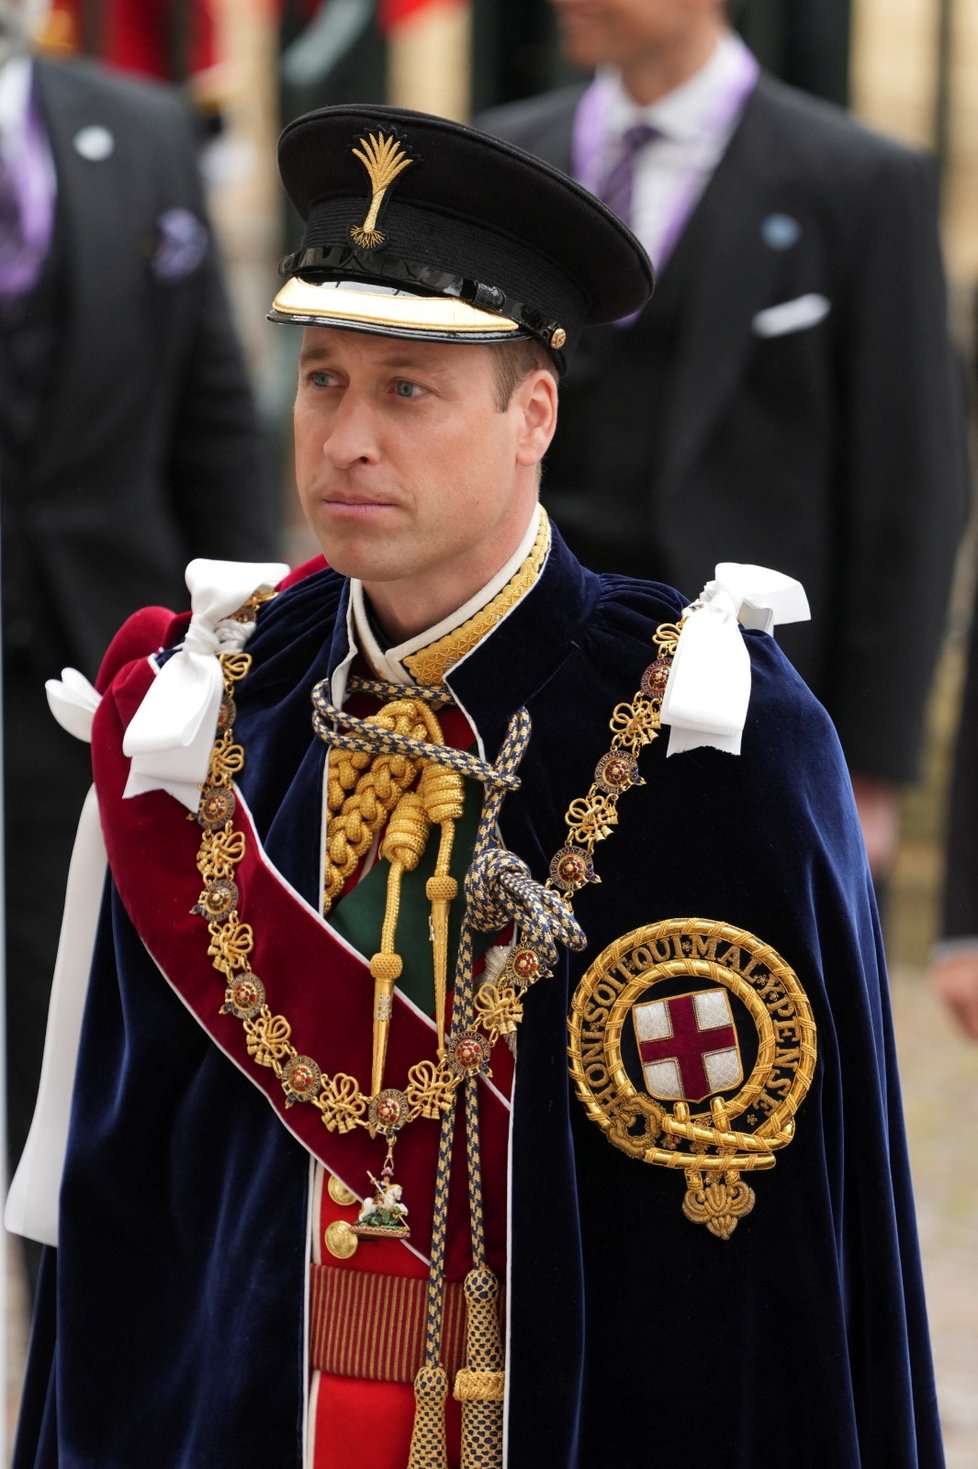 Korunovace krále Karla III.: Princ William